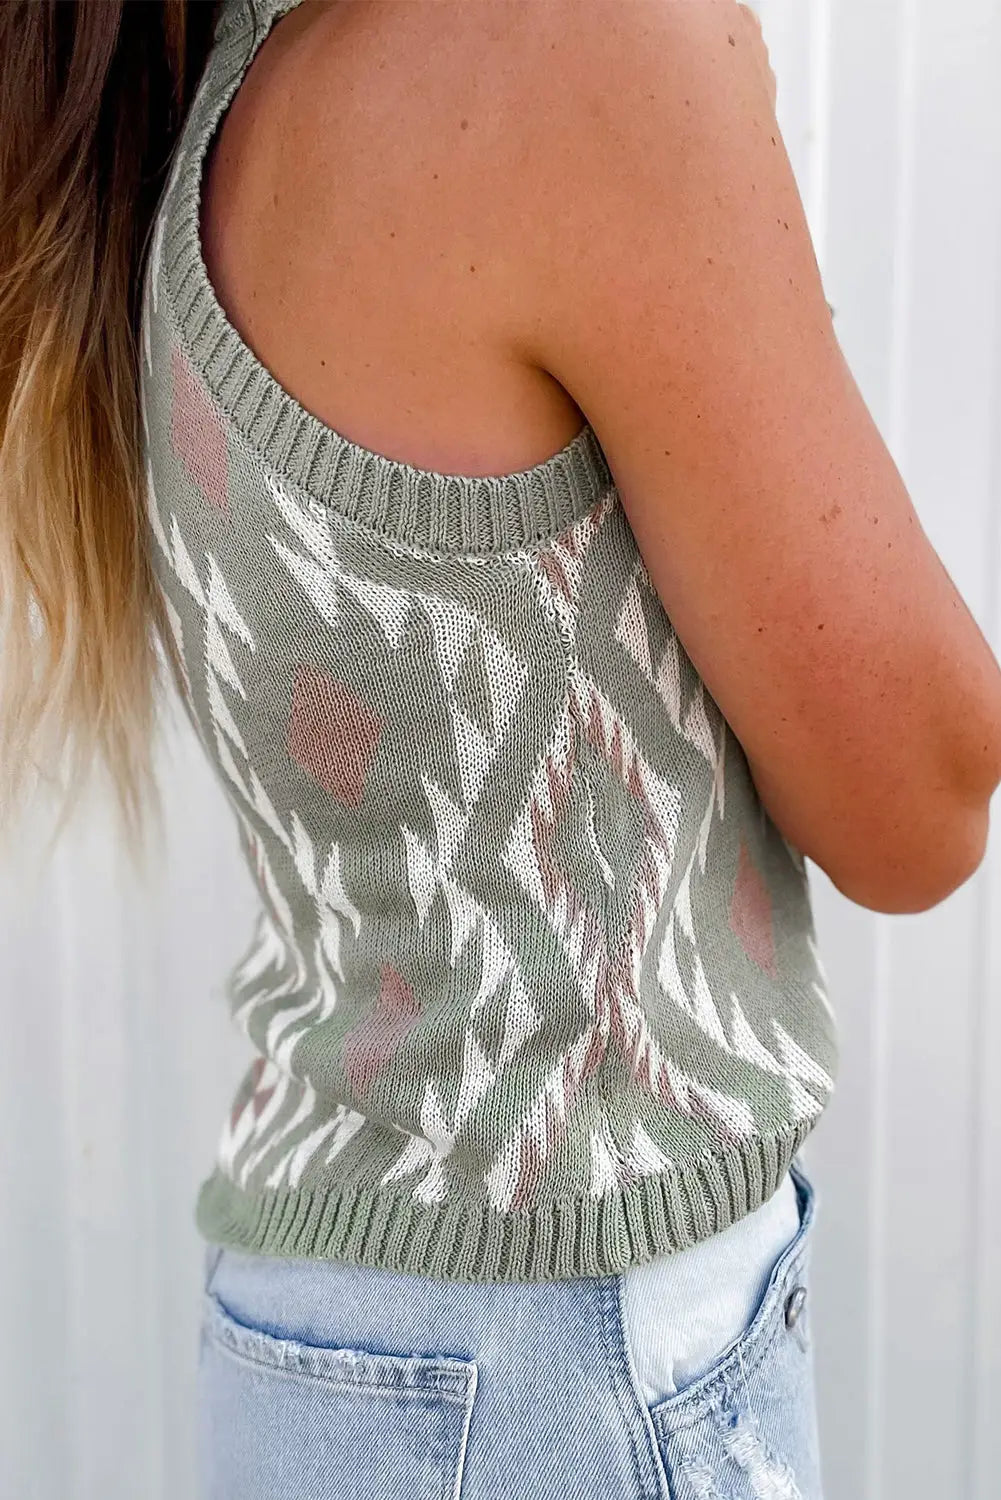 Laurel green western tribal aztec pattern knit sweater tank - tops